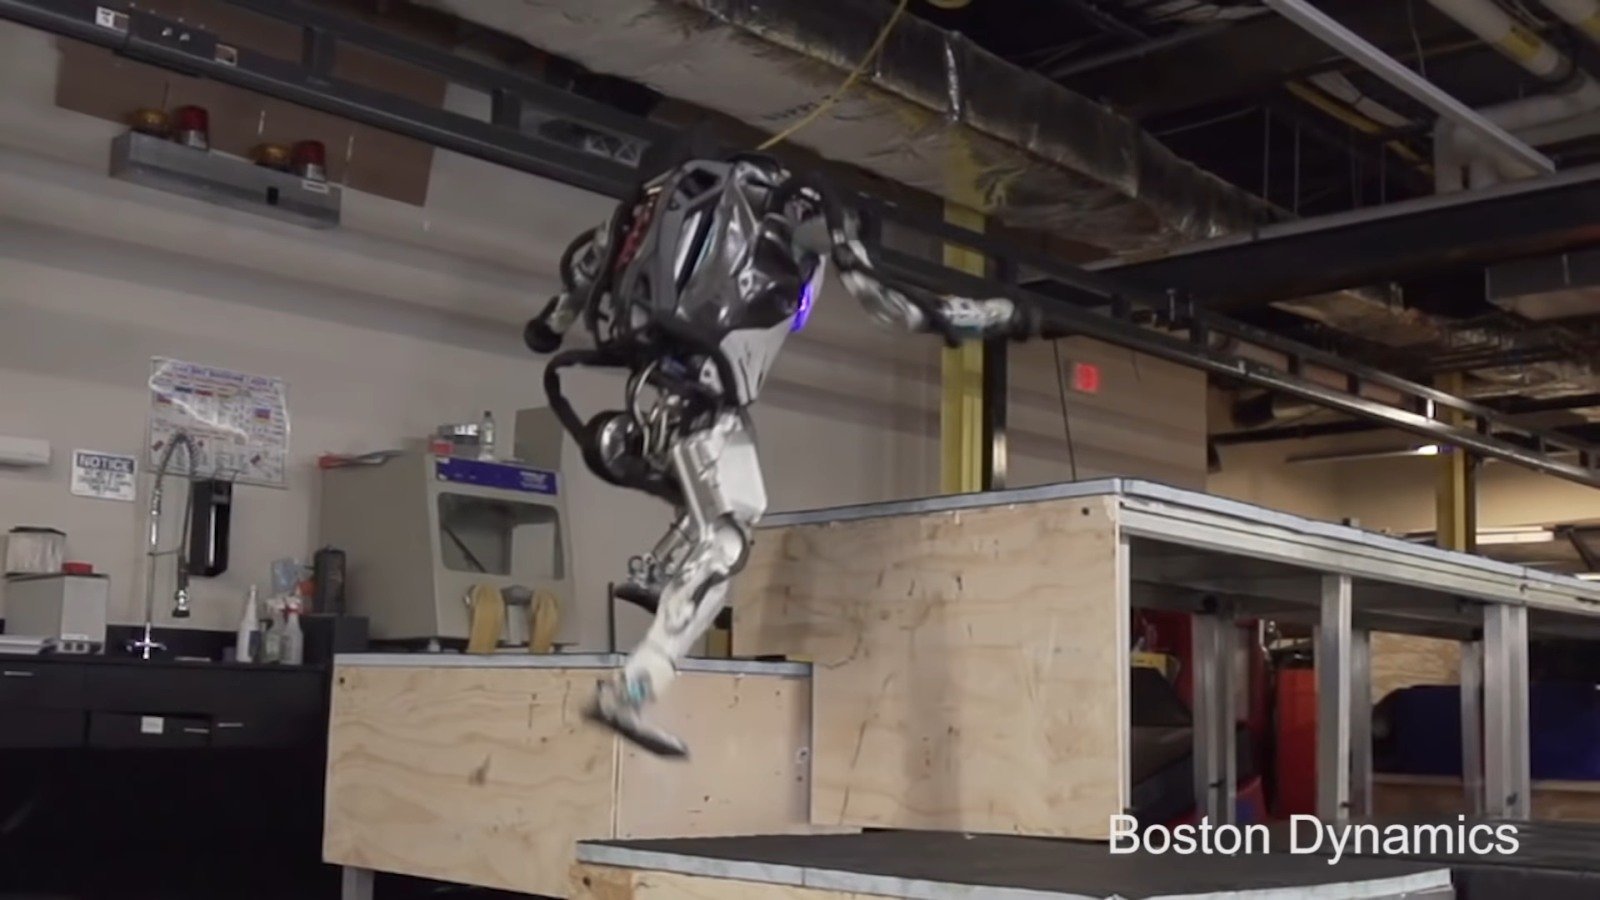 #filmy | Firma Boston Dynamics nauczyła swojego robota 